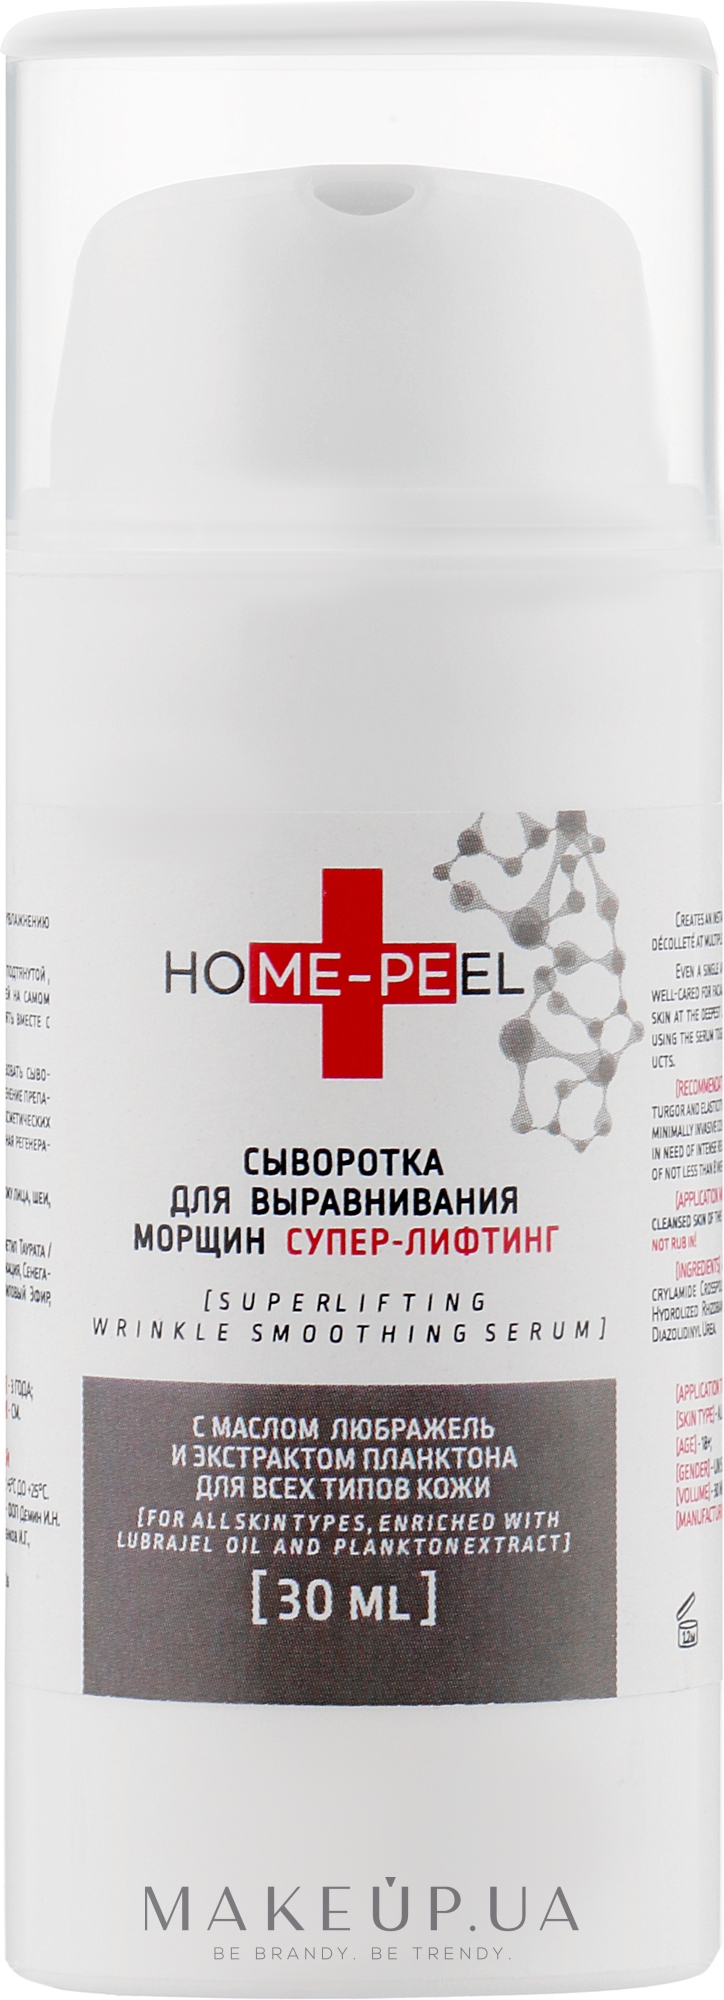 Сыворотка для выравнивания морщин "Супер-лифтинг" с маслом Любражель и экстрактом планктона для всех типов кожи - Home-Peel Super Lifting Wrinkle Smoothing Serum — фото 30ml